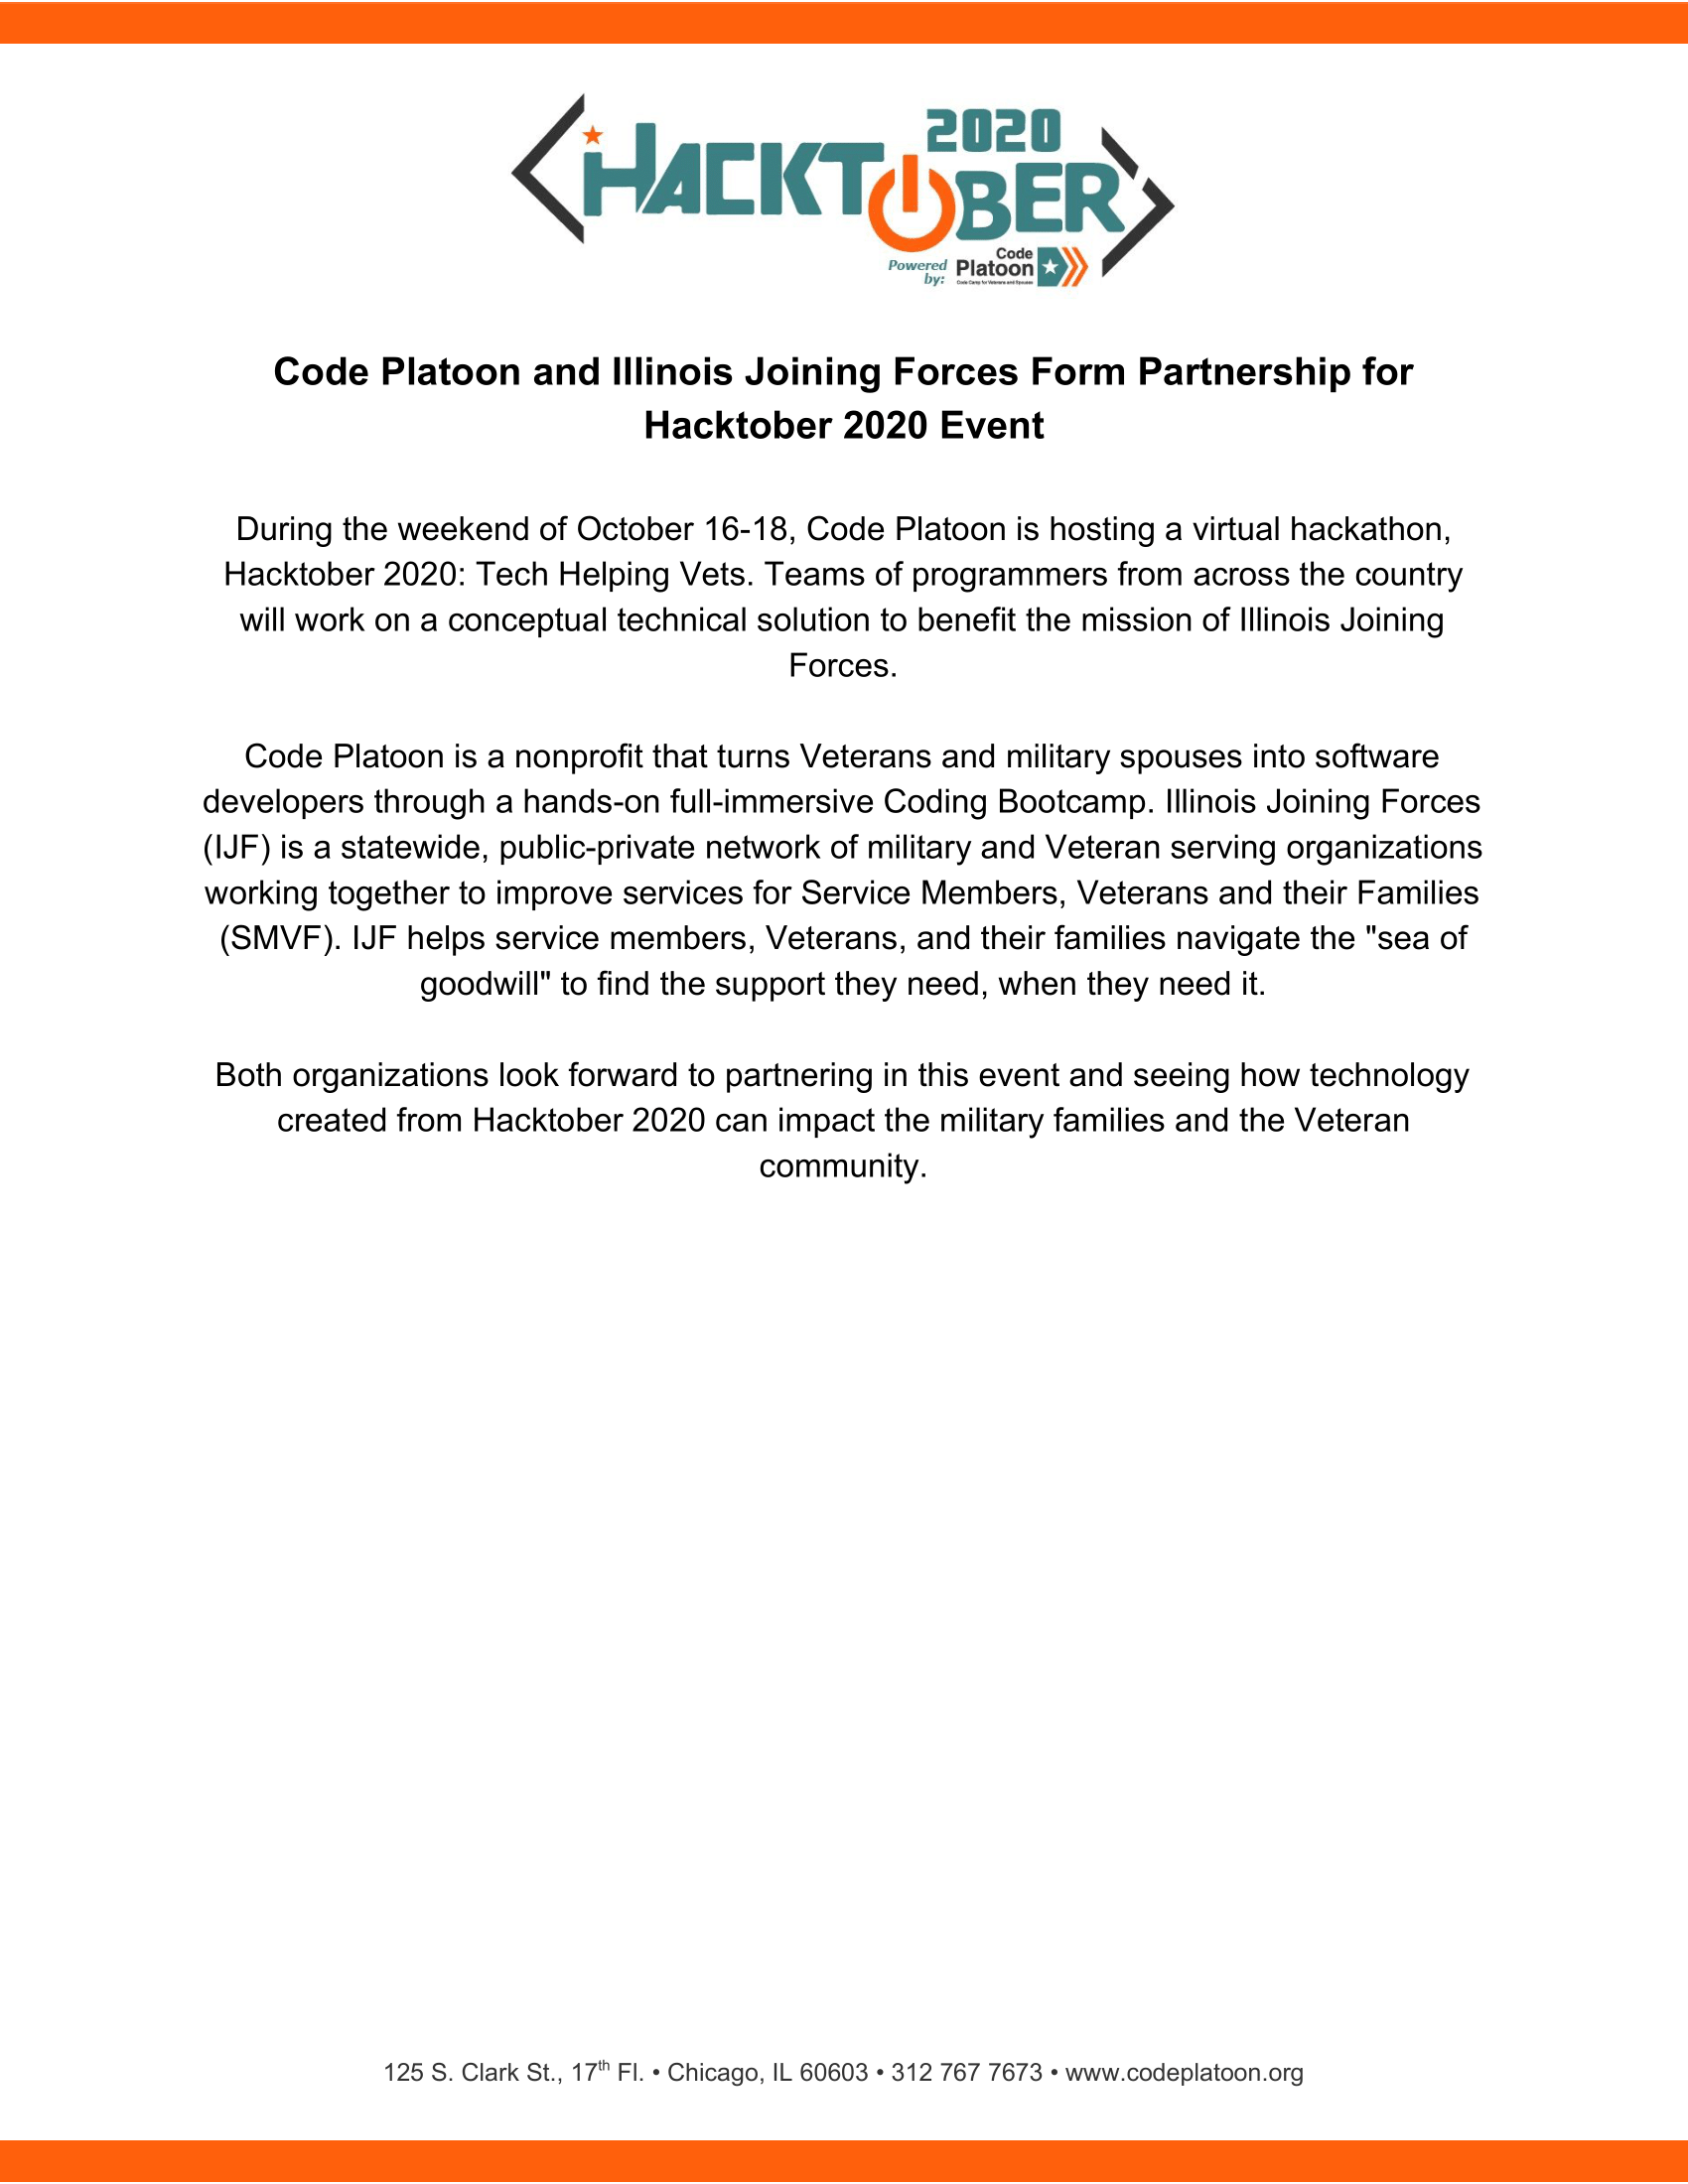 Code Platoon & IJF Announcement 